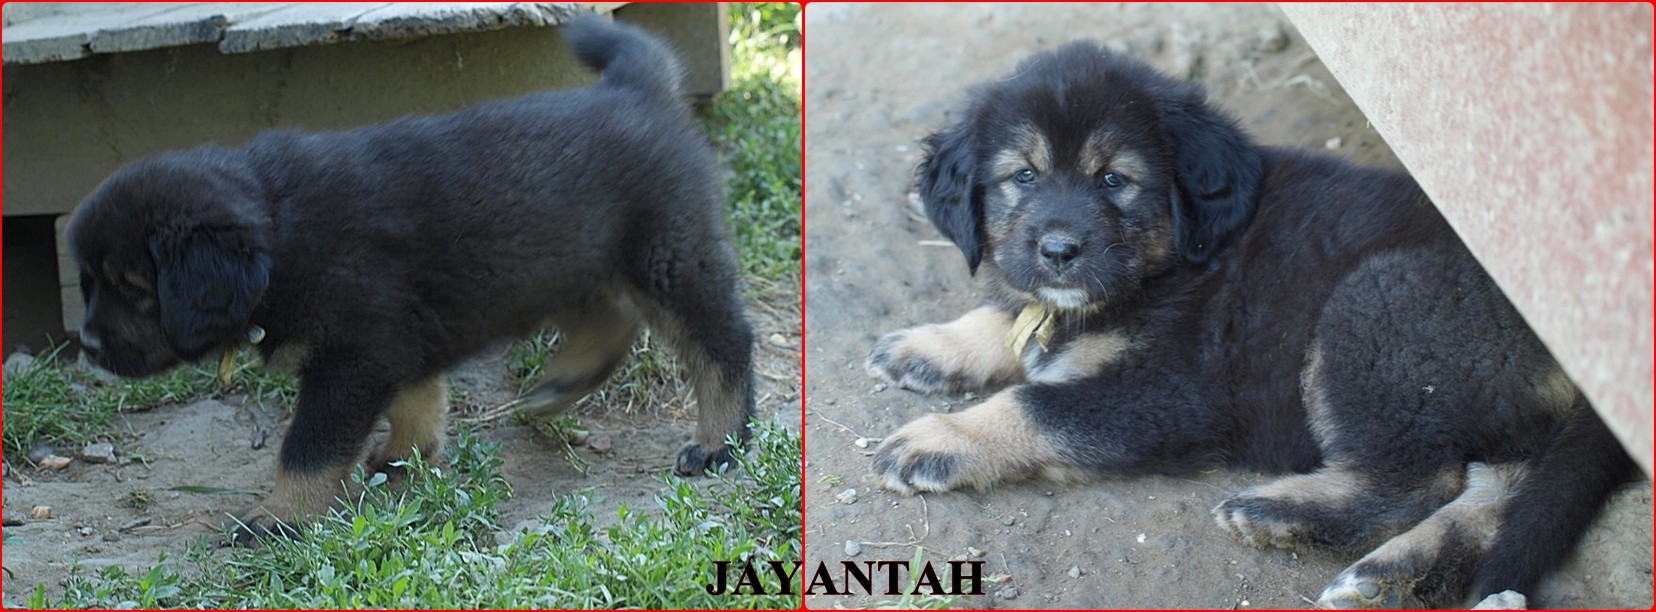 jayantah_1